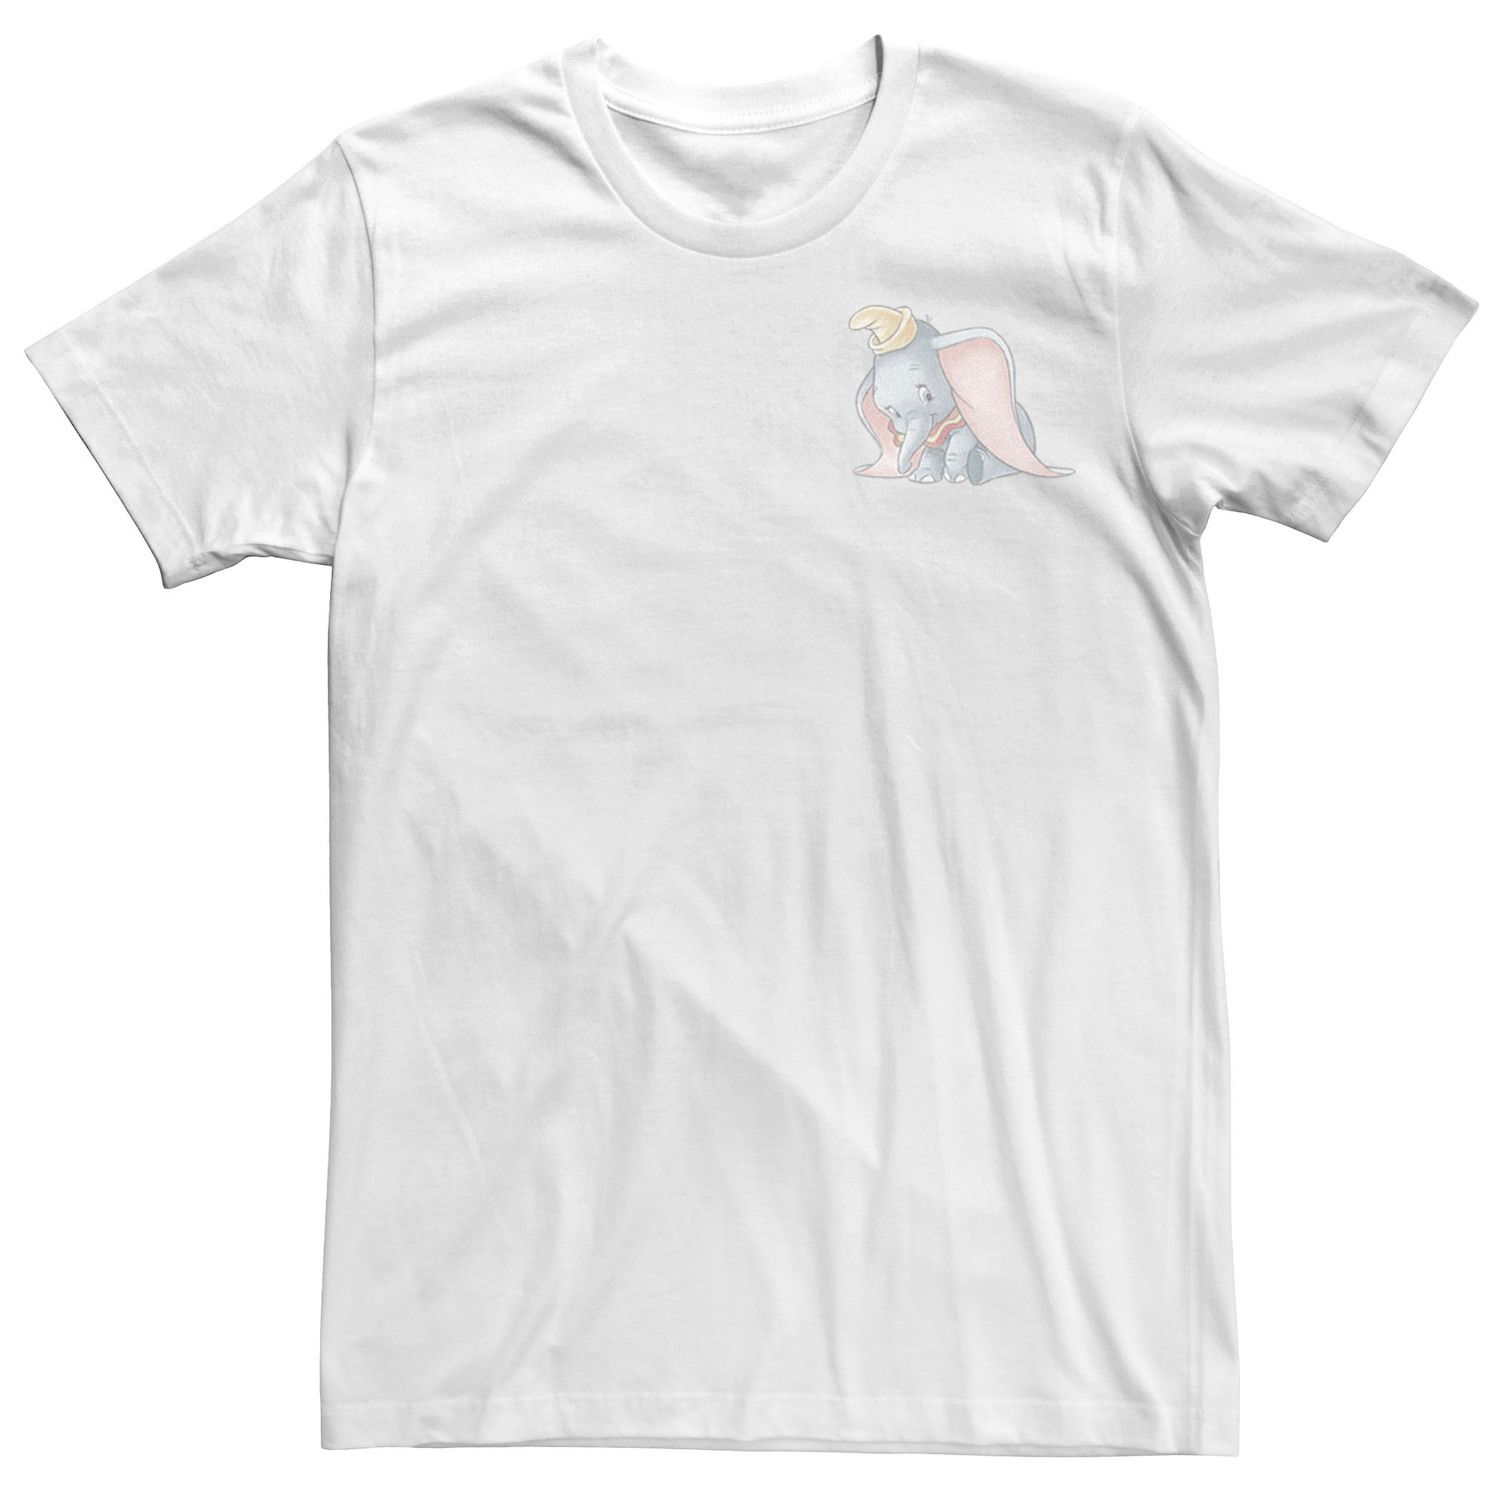 Мужская милая винтажная футболка с левой грудью Dumbo Disney